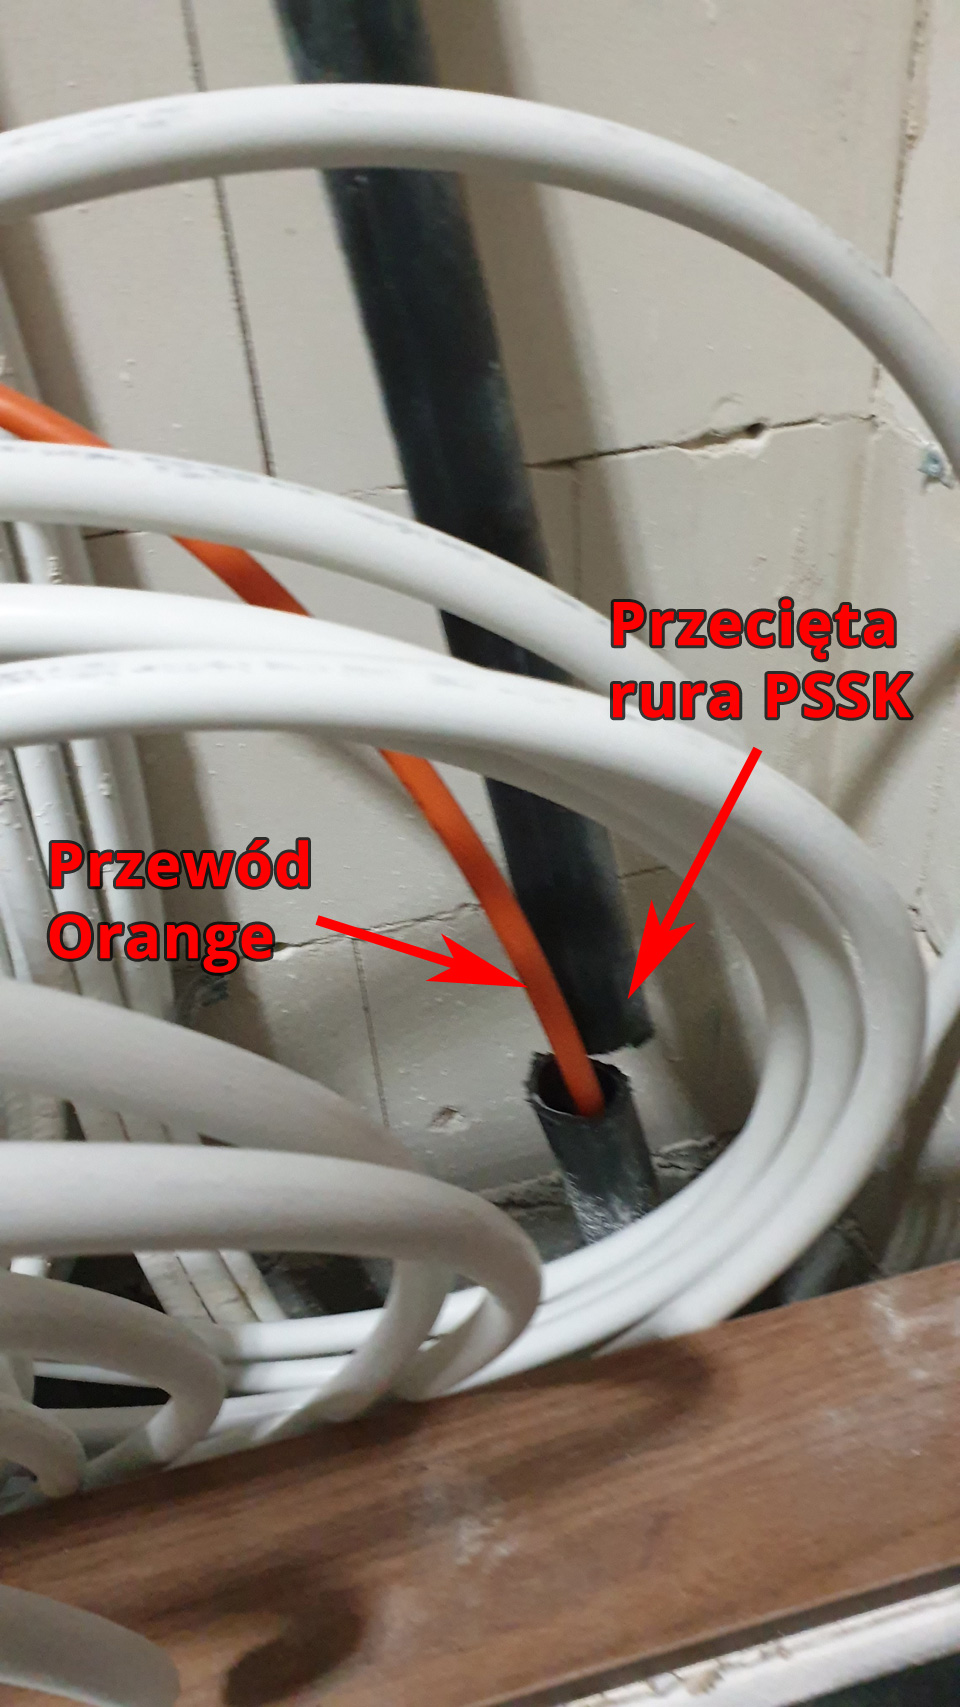 Orange (Orange Polska S.A.) dewastuje sieci telekomunikacyjne konkurencji w Kiełczowie